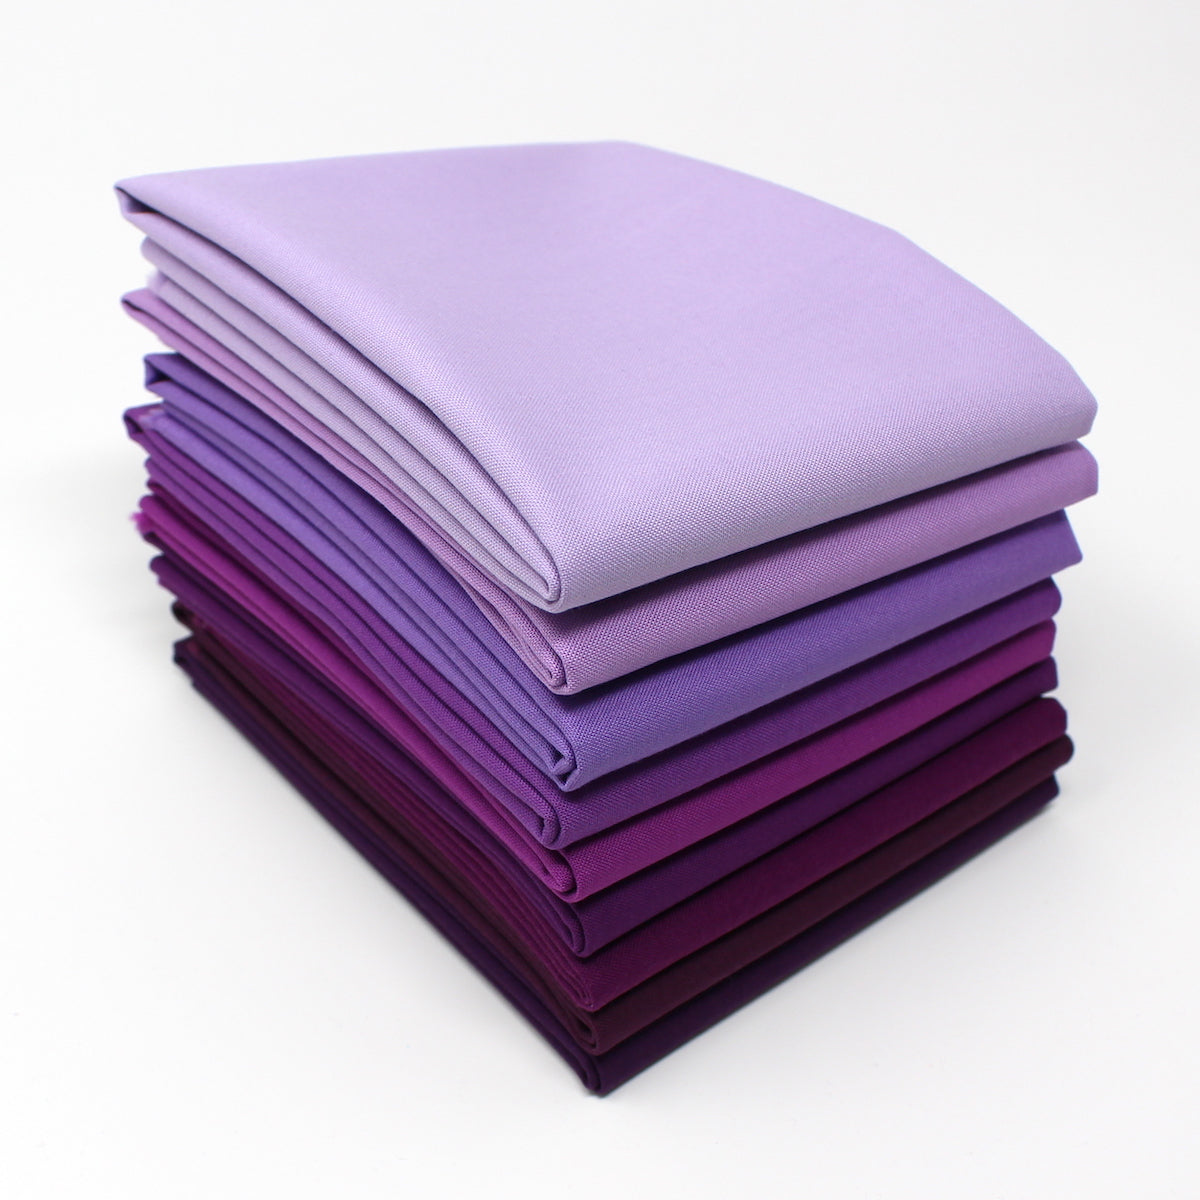 Violet 9 Fat Quarter Bundle - Kona Cotton